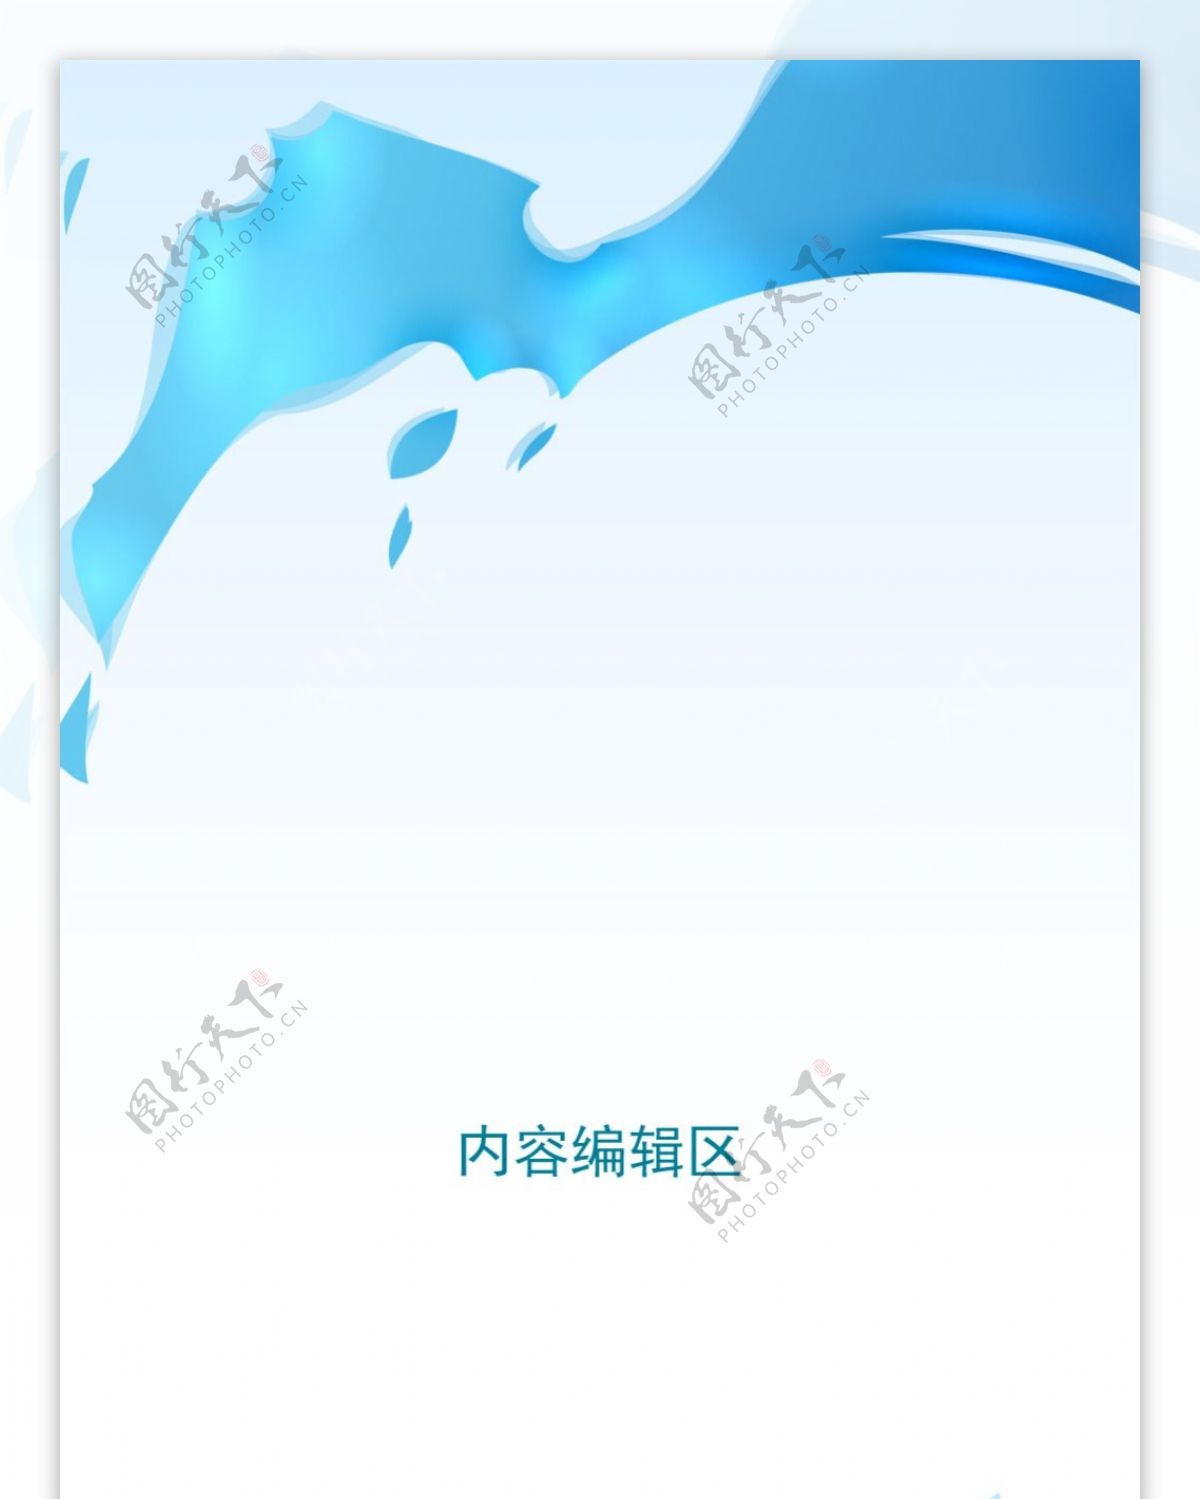 精美蓝色梦幻背景架设计模板素材海报画面